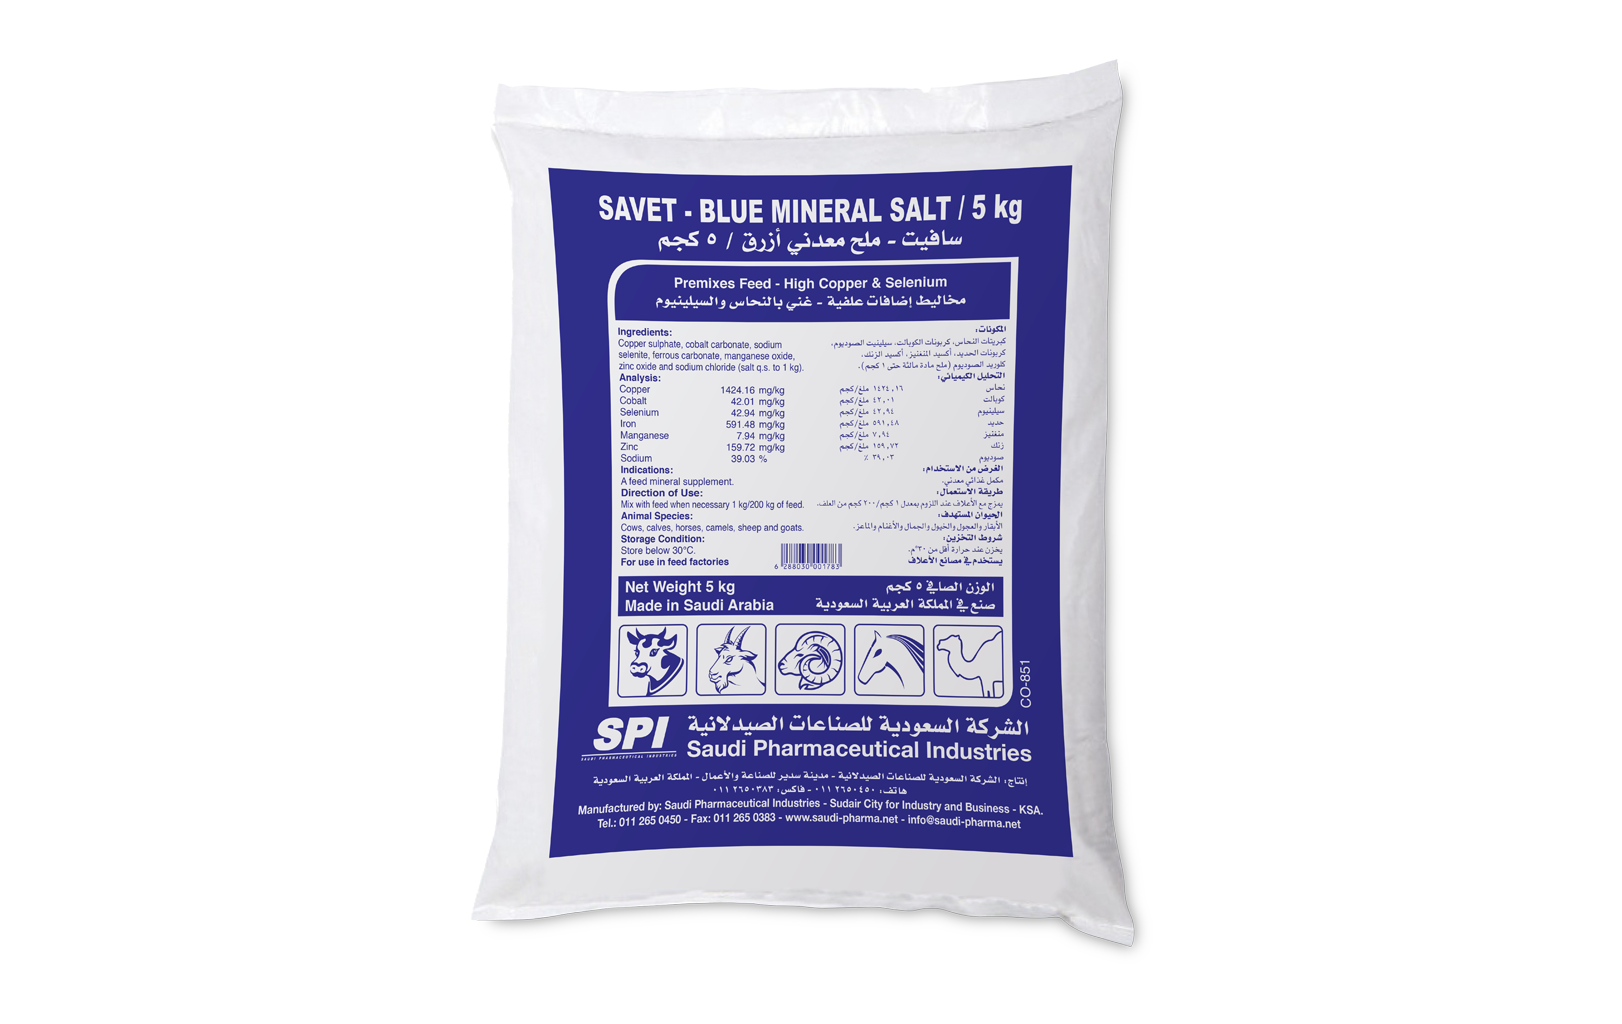 Savet-Blue mineral salt 5 kg